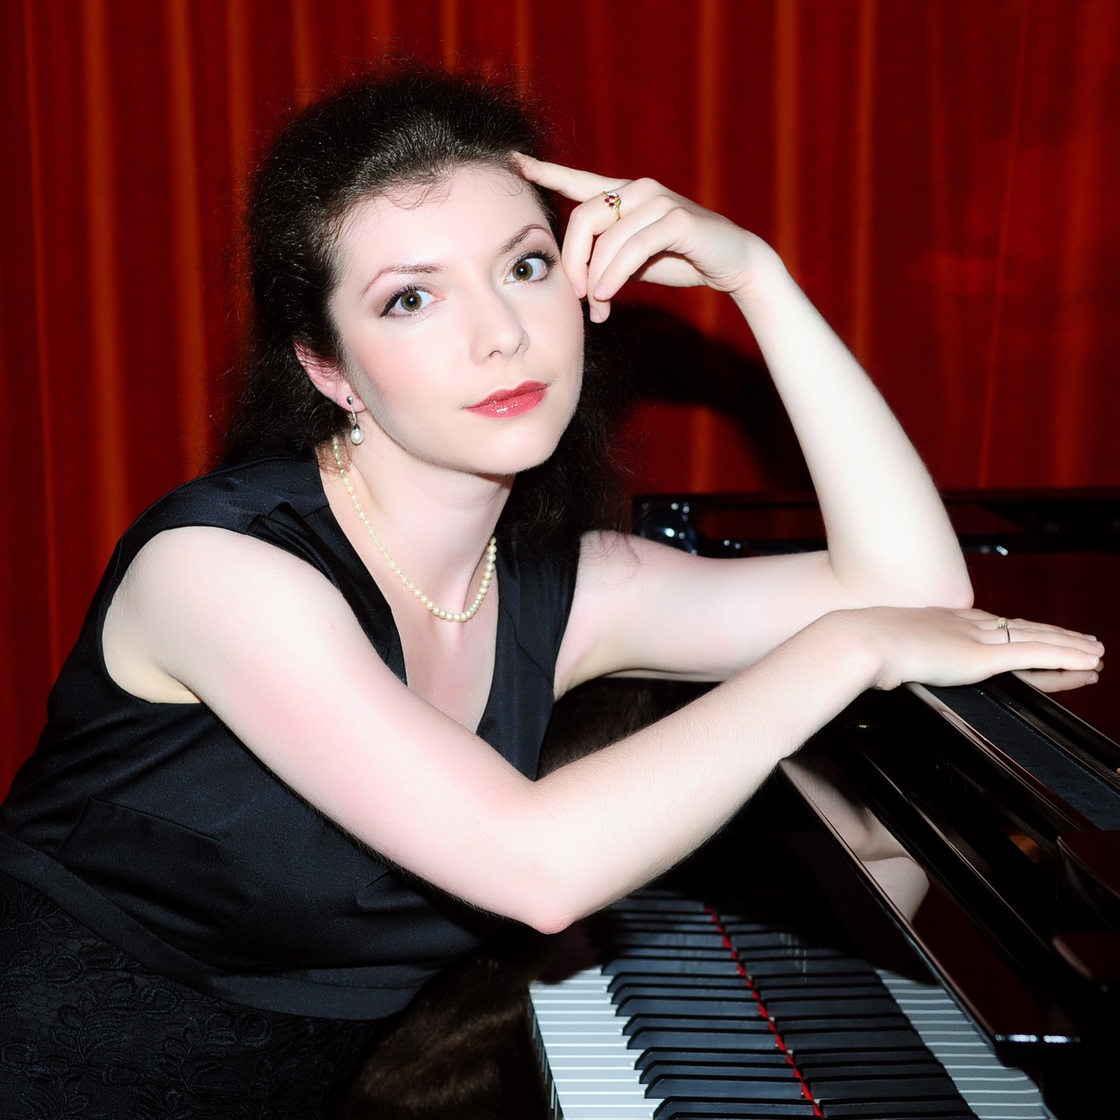 Die Pianistin Sofja Gülbadamova am Flügel